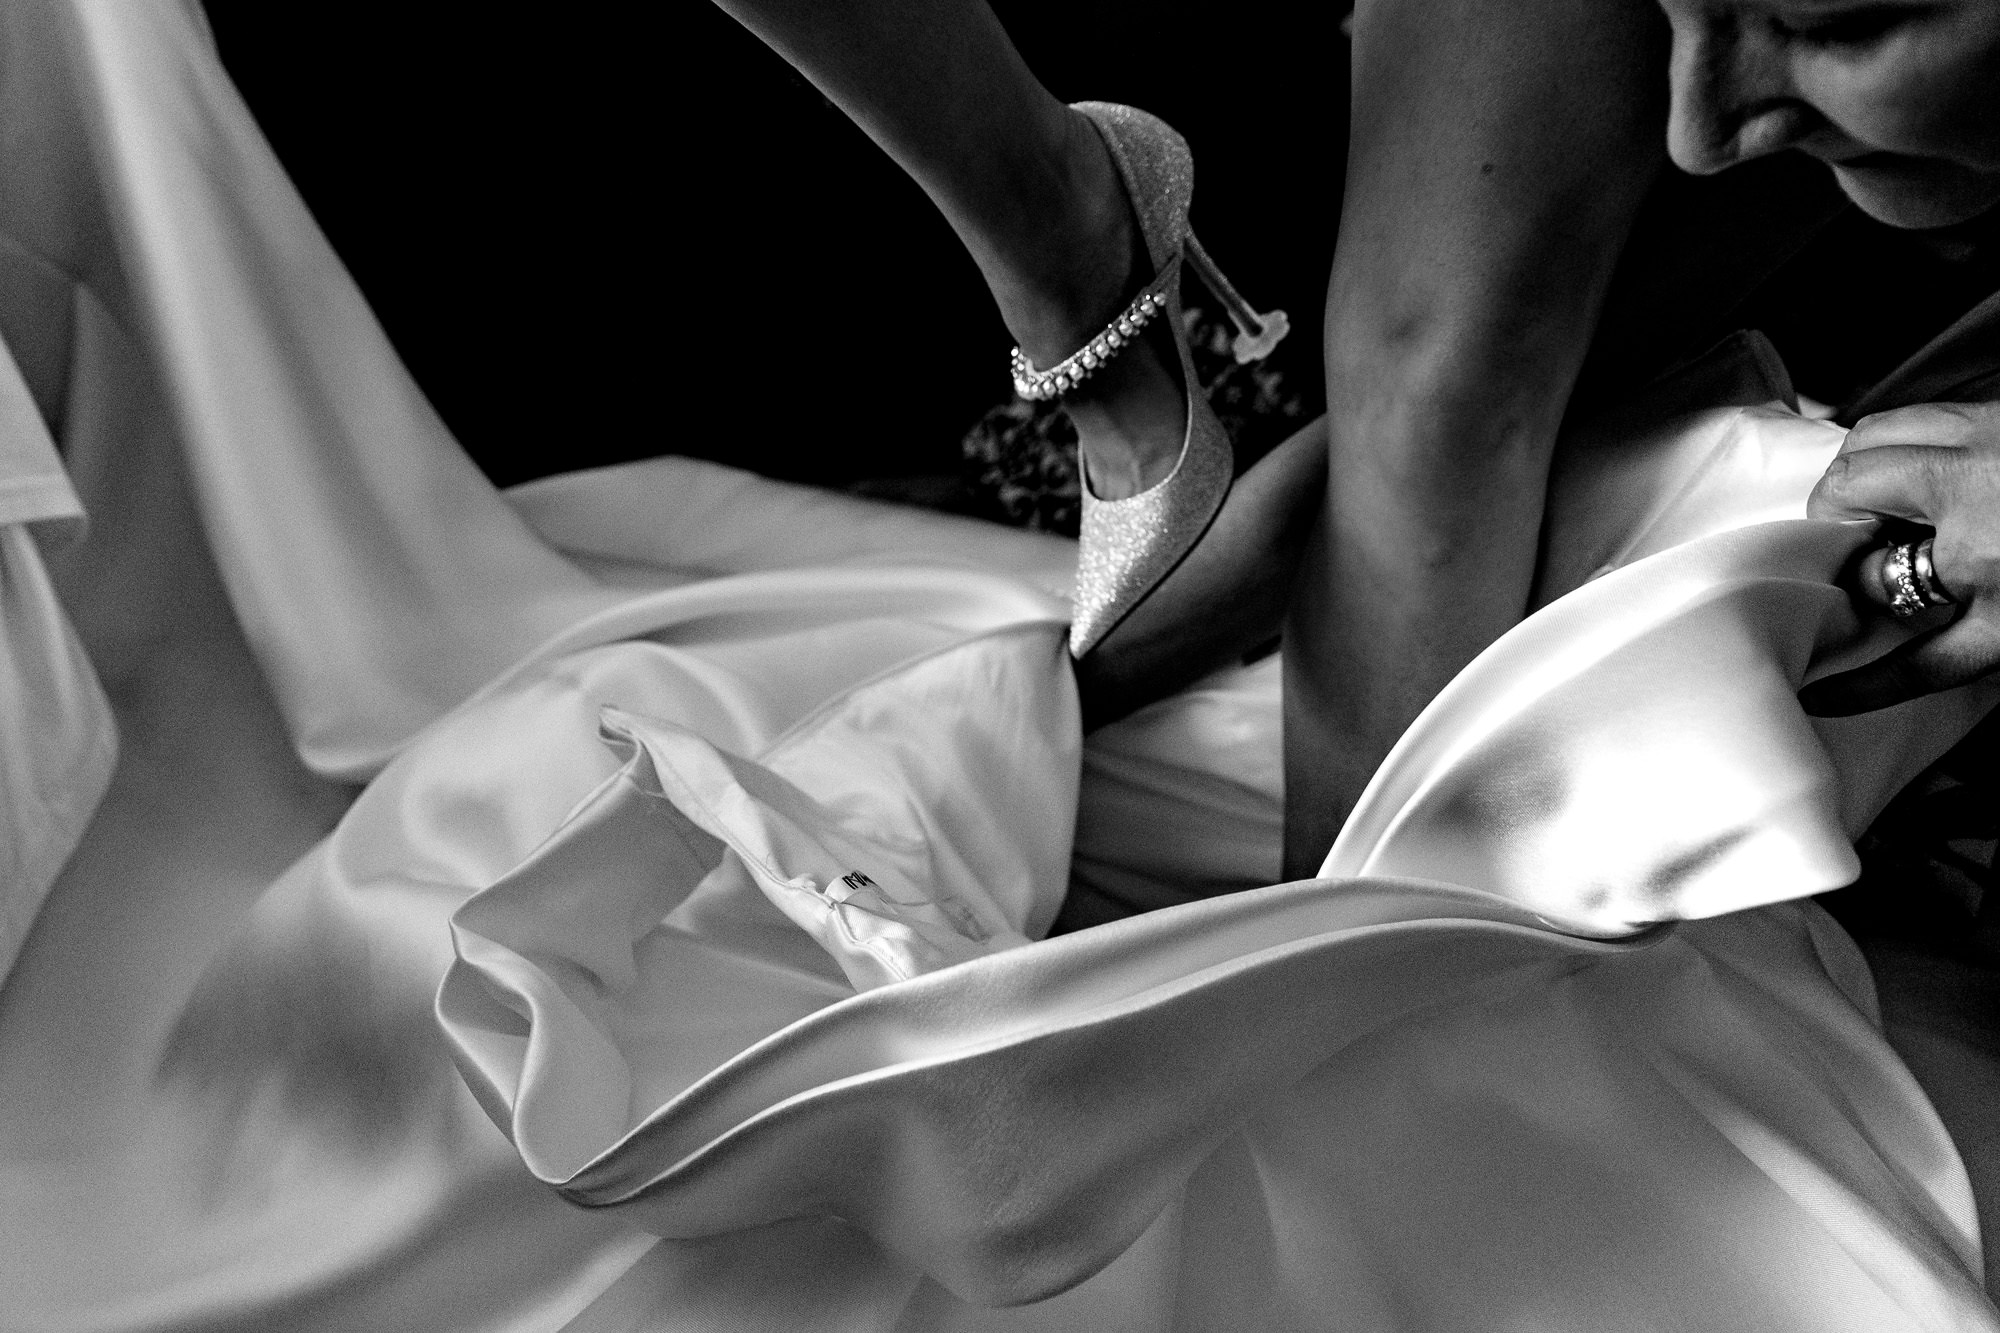 A bride steps into her wedding dres